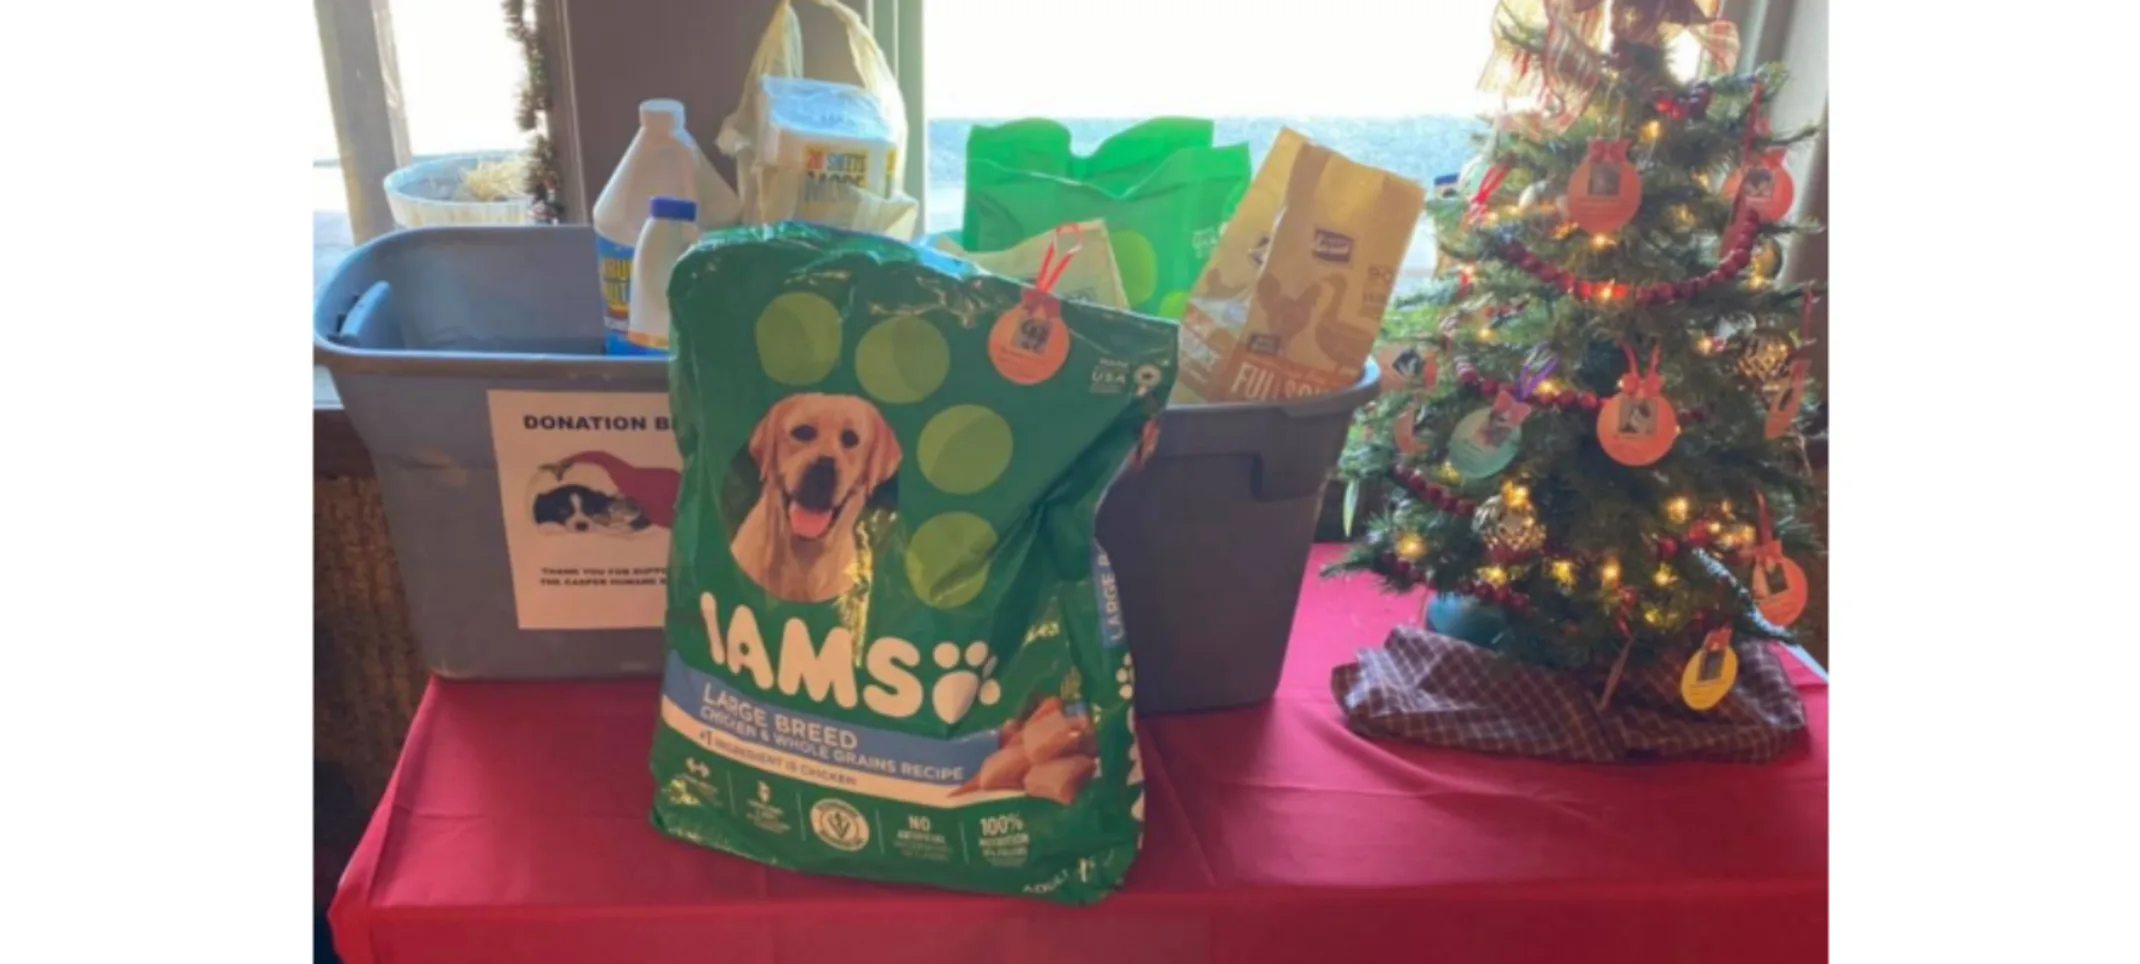 Mini Christmas Tree, Donation Supplies, and a bag of IAMS Dog Food